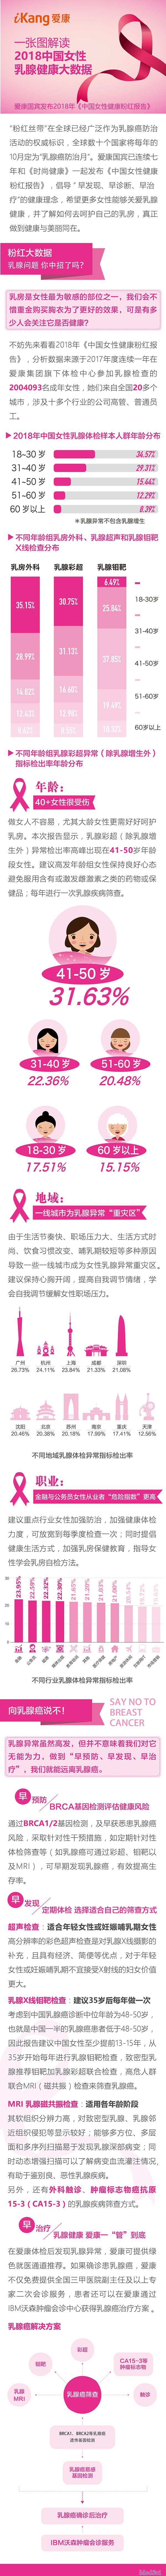 一图解读2018中国女性乳腺<font color="red">健康</font><font color="red">大数据</font>